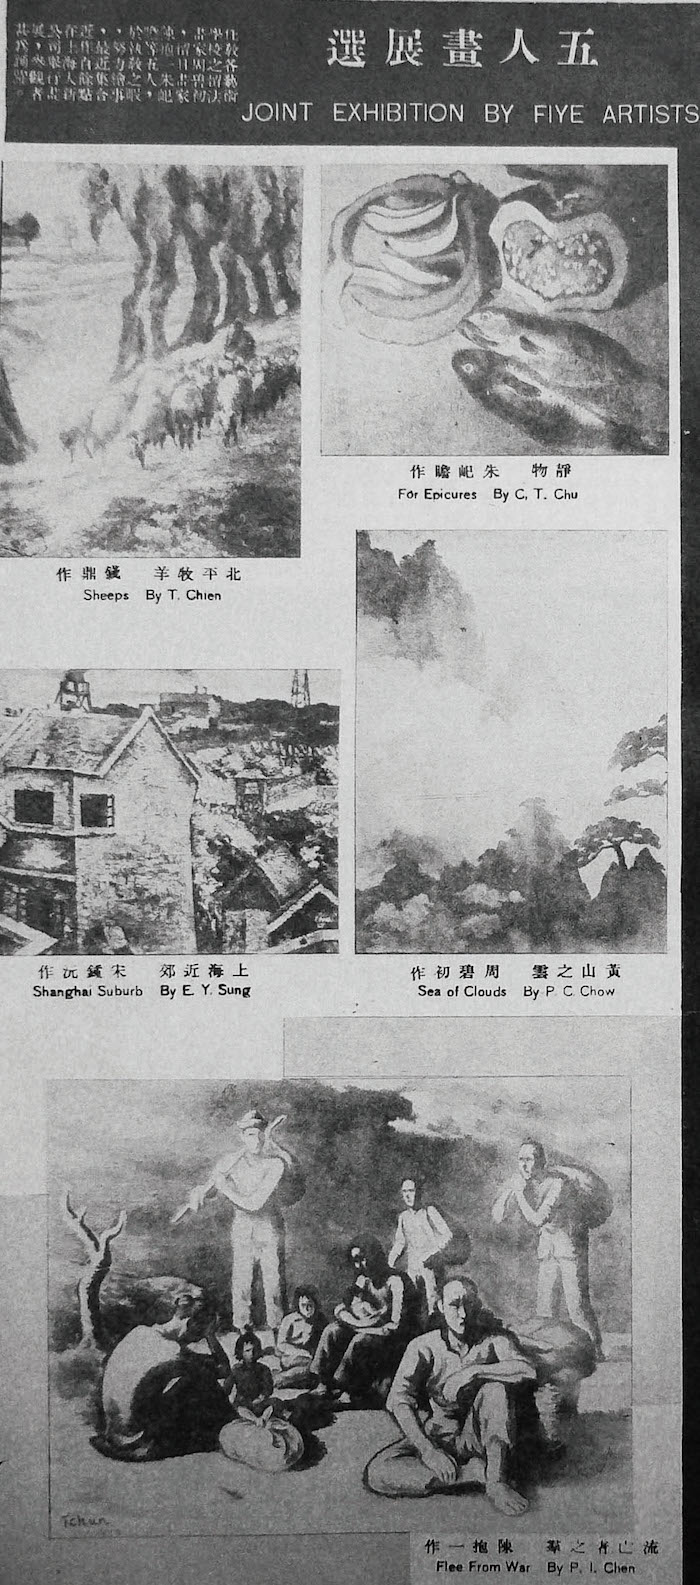 1940年1月《良友》第150期介绍“五人联合油画展”， 右上角为朱屺瞻所作《静物》